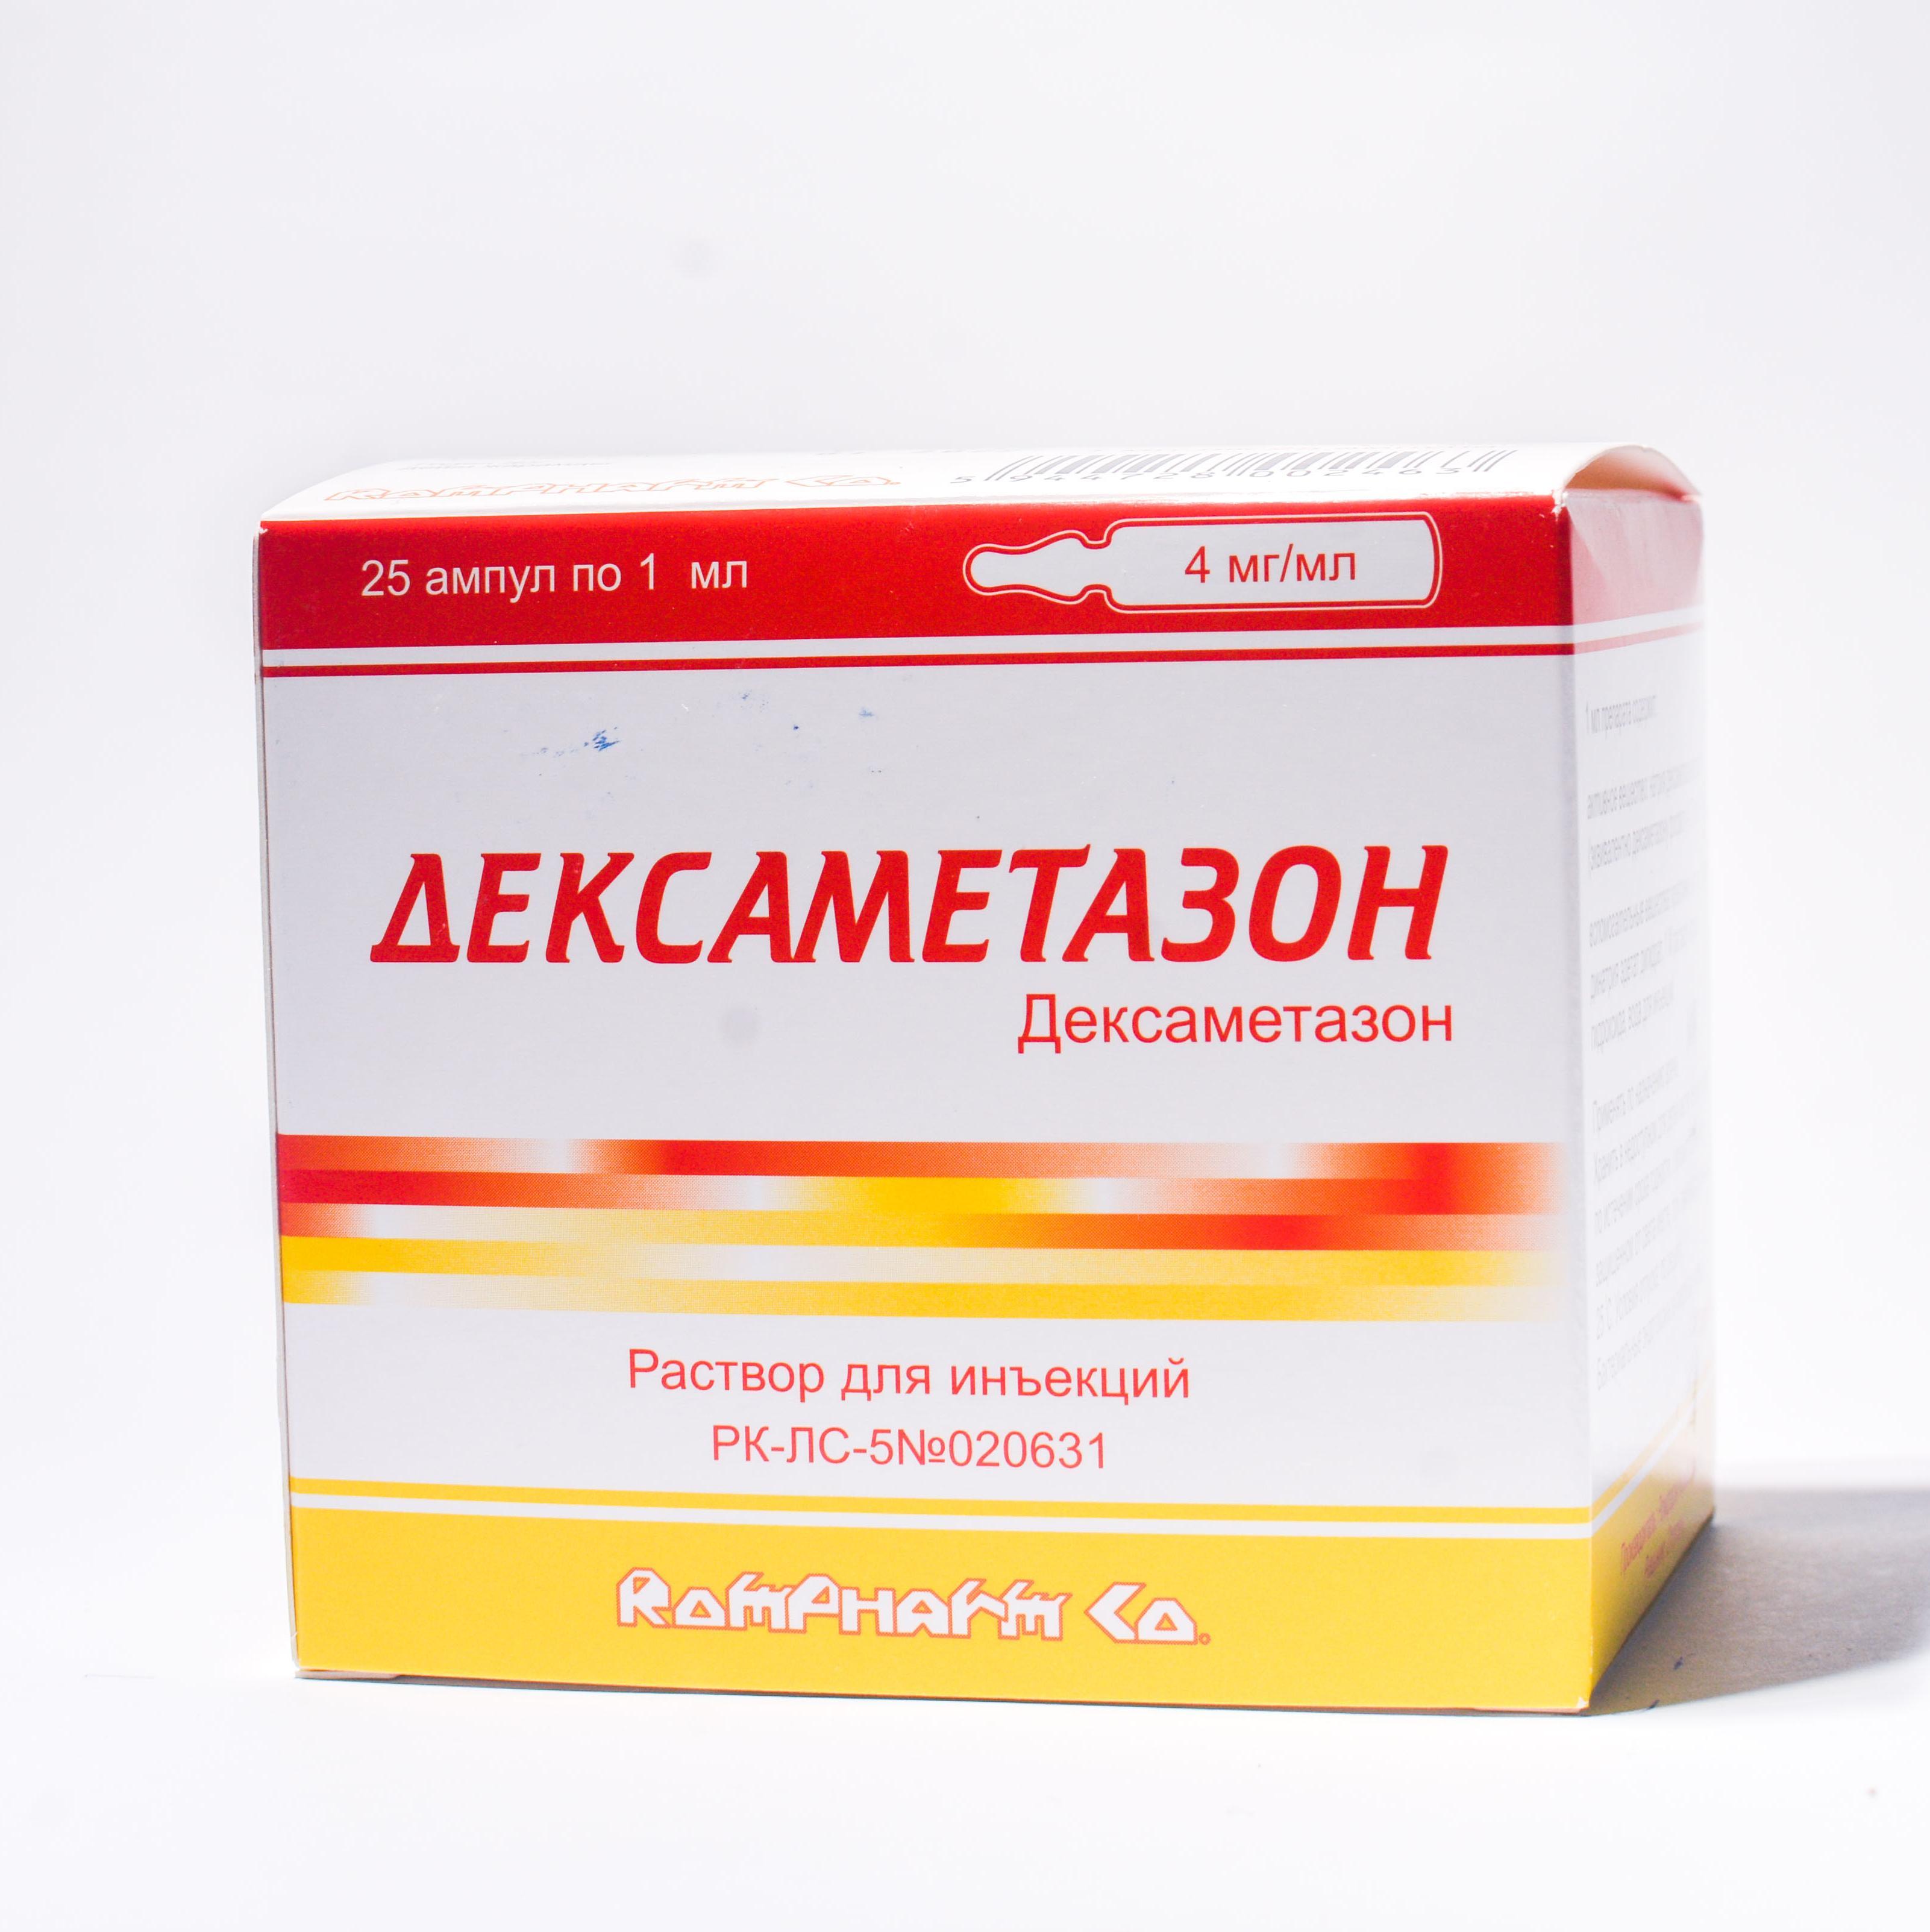 Дексаметазон раствор для иньекций 4 мг/мл 1 мл № 25 цена  .